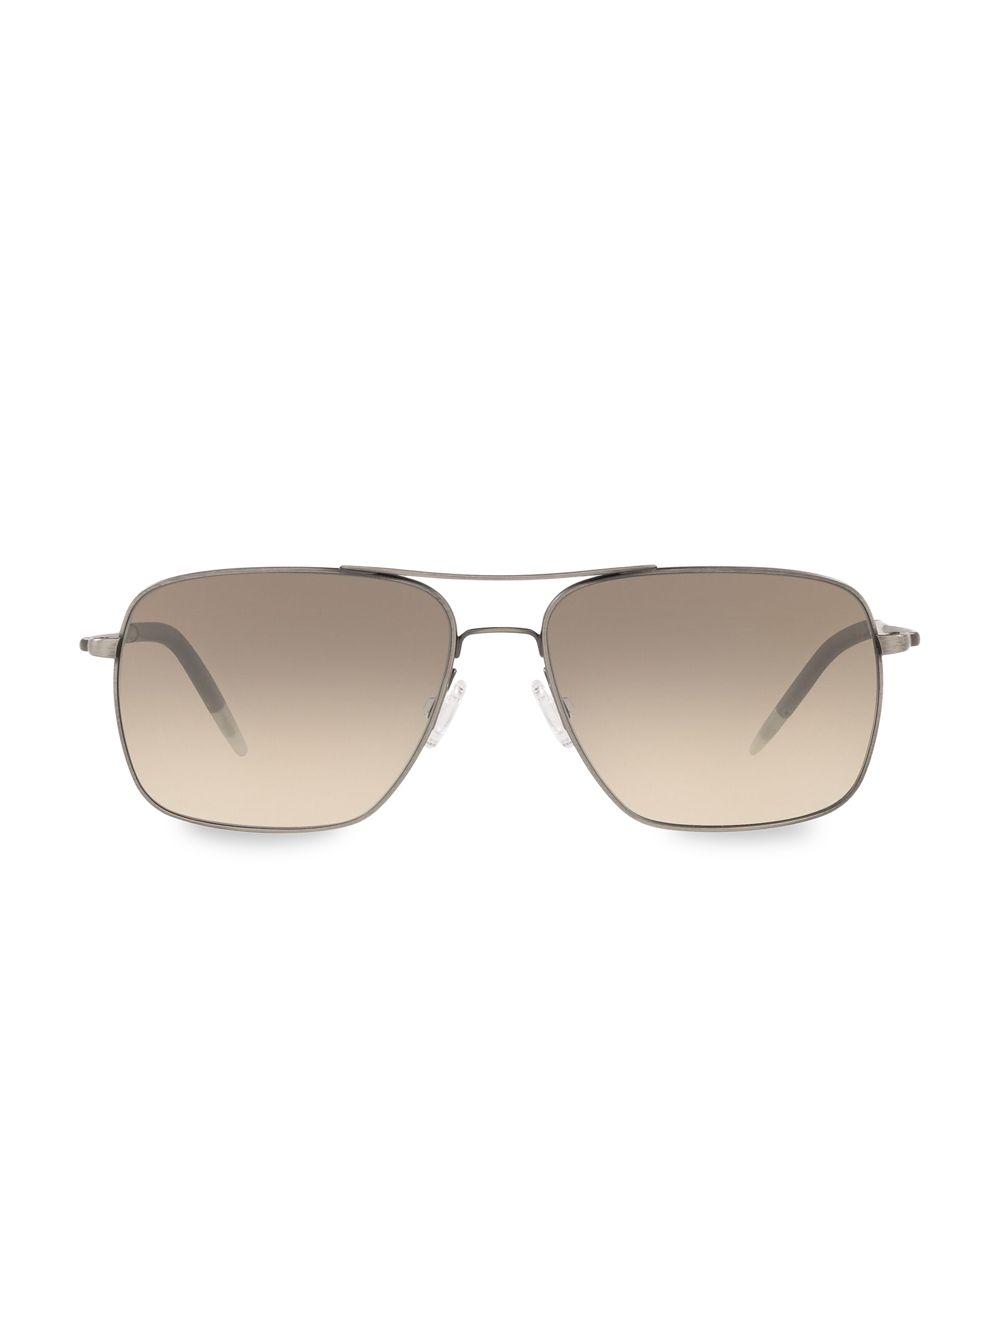 Солнцезащитные очки-авиаторы Clifton 58 мм Oliver Peoples, серебряный